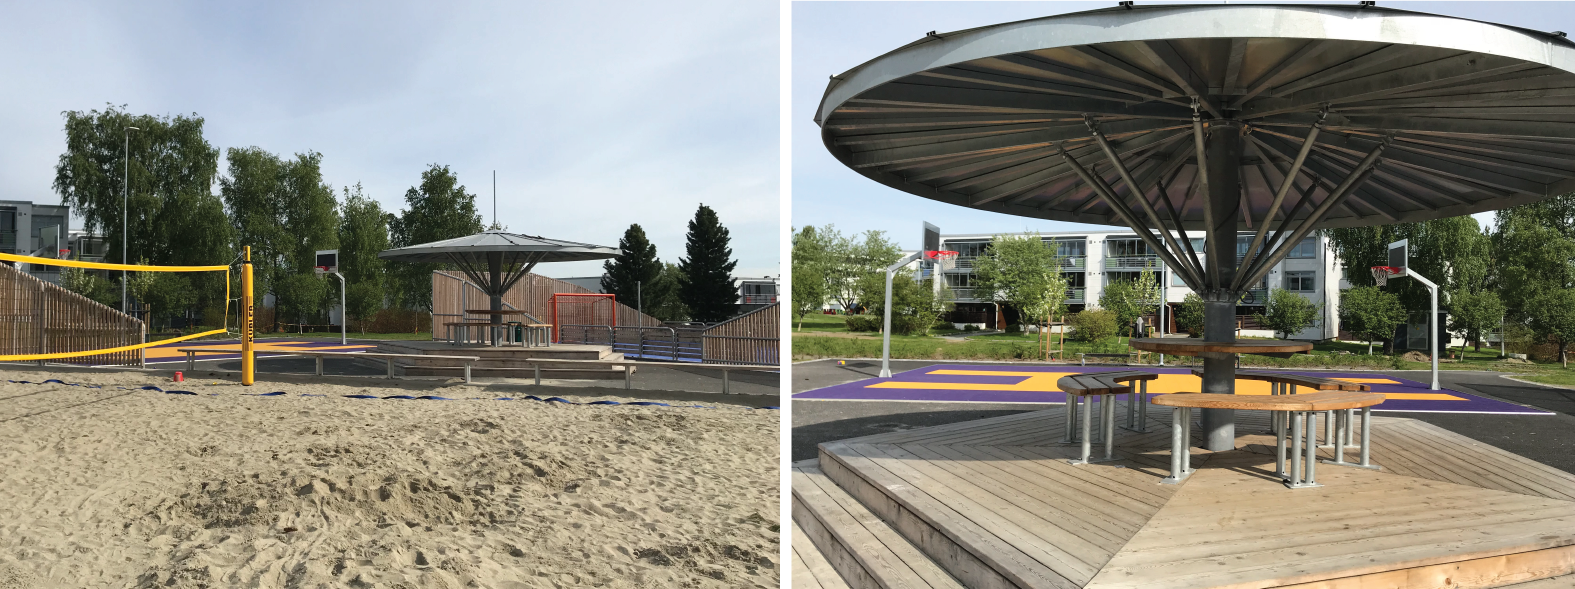 Åpen plass med sandvolleyballbane, basketballbane, ballbinge og sittebenker med tak